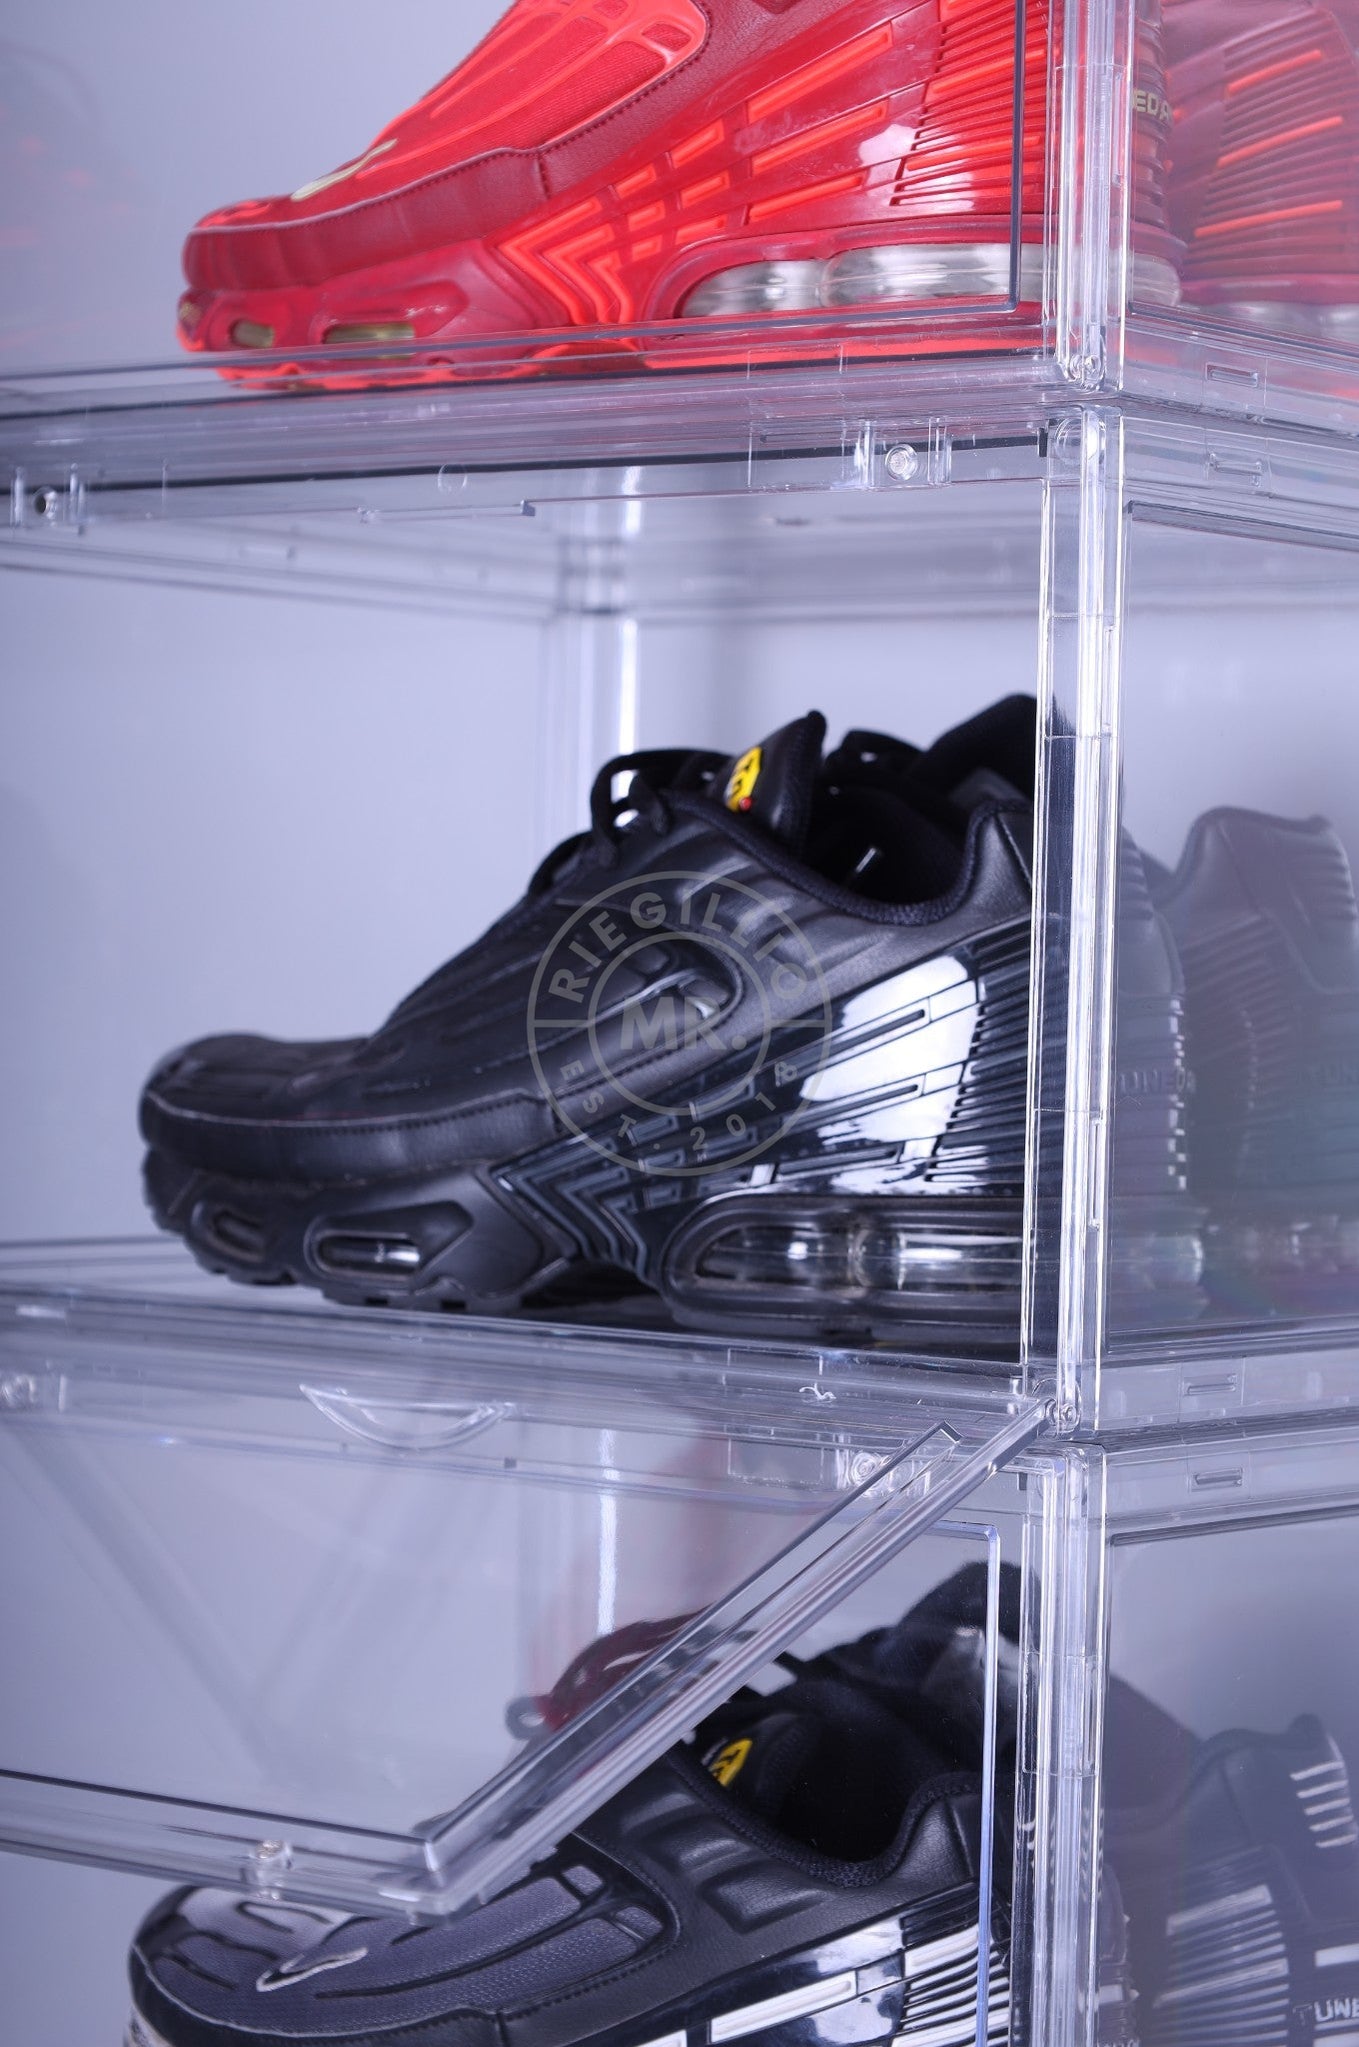 Premium Sneaker Box Transparent at MR. Riegillio